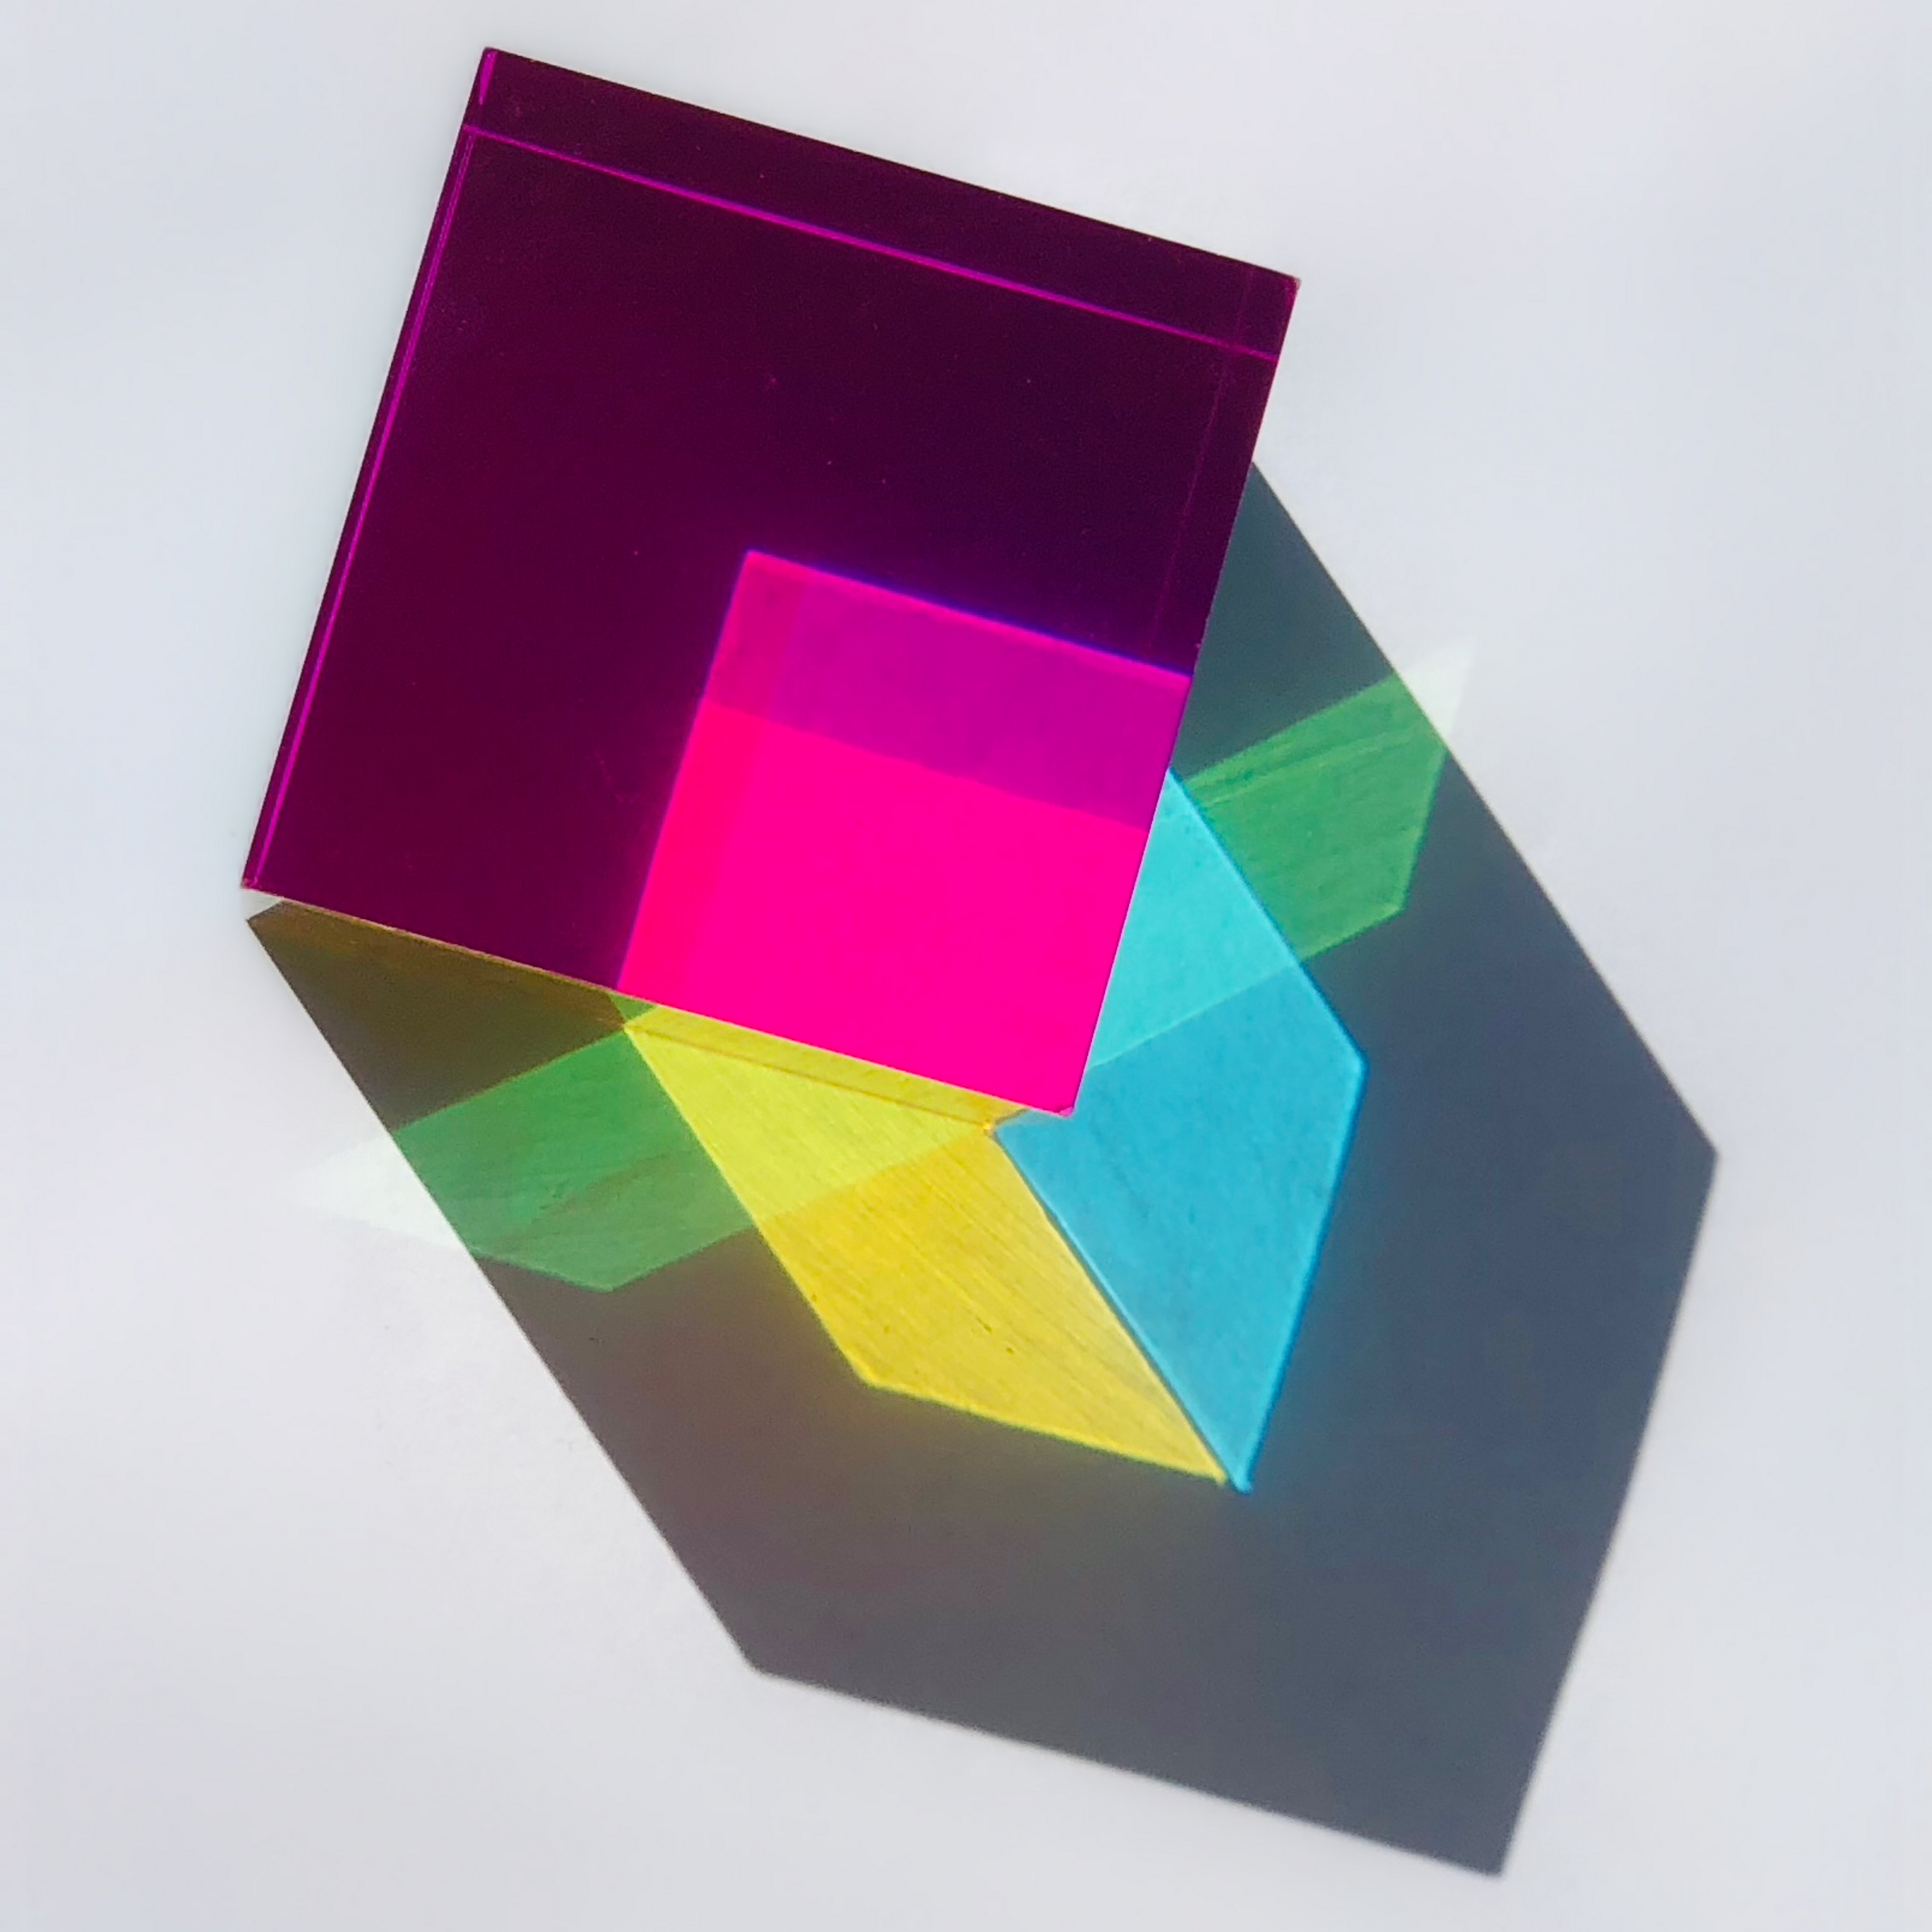 The Original Cube